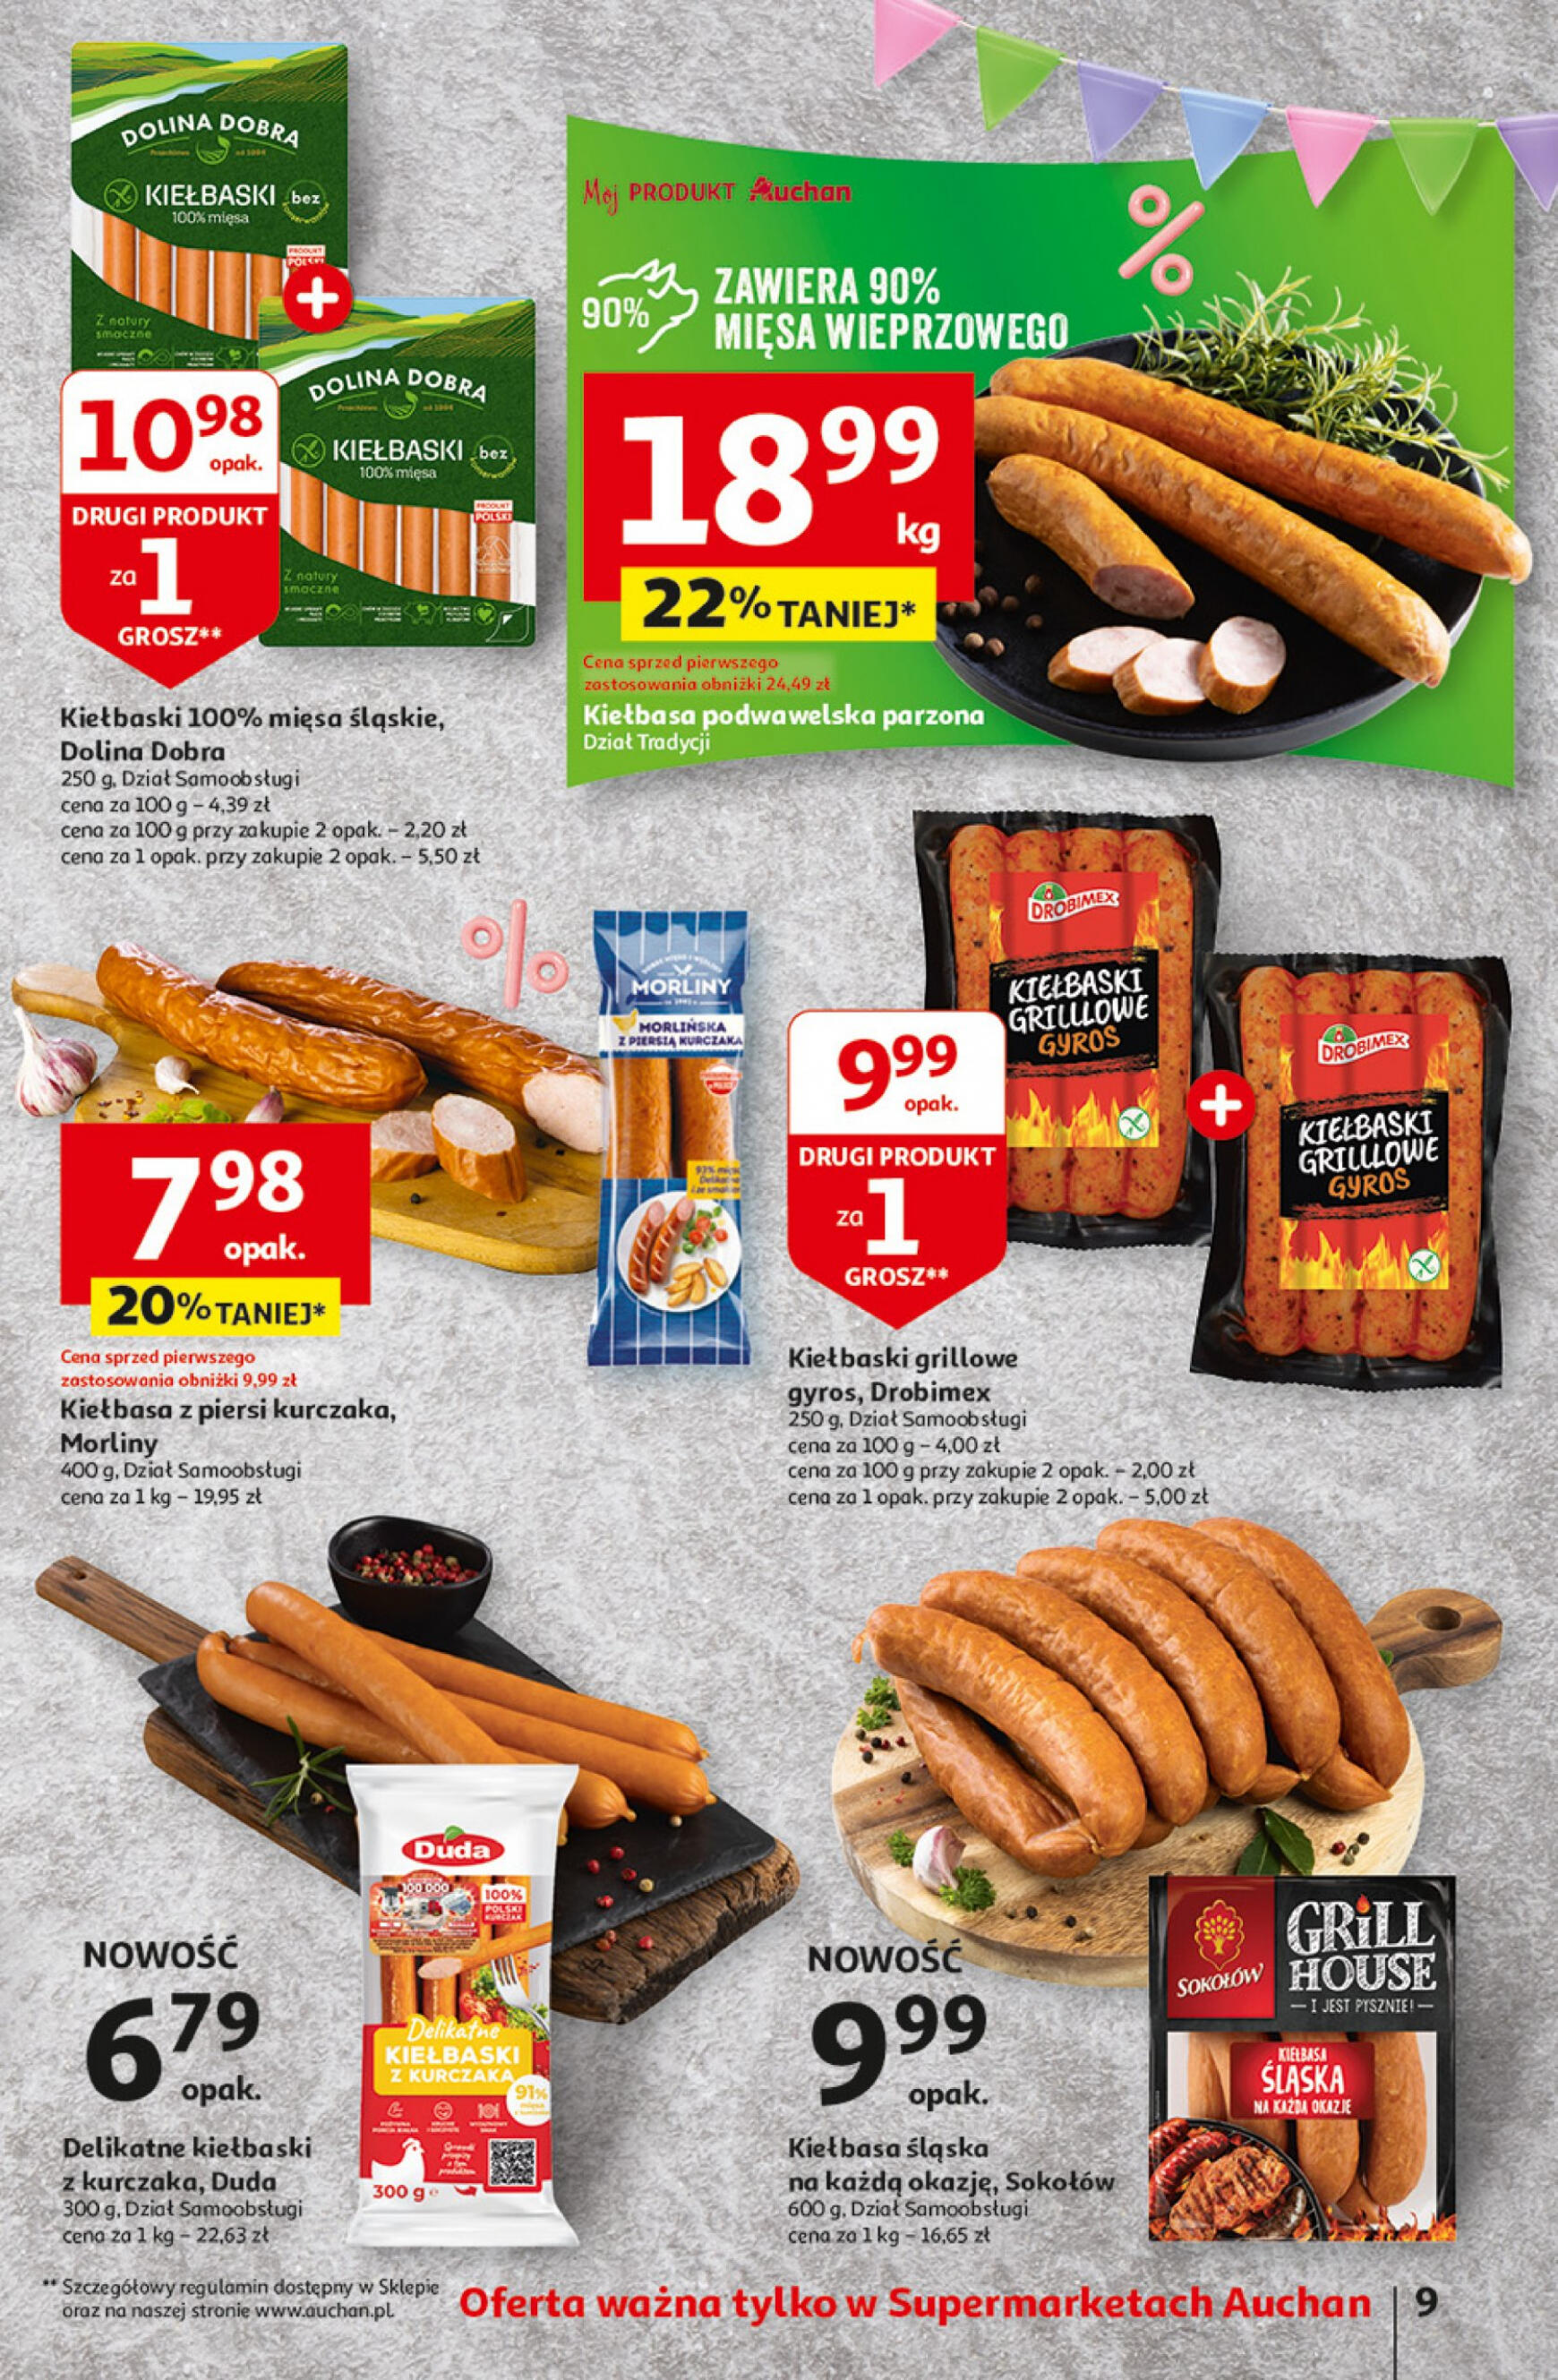 auchan - Supermarket Auchan - Gazetka Jeszcze taniej na urodziny gazetka aktualna ważna od 02.05. - 08.05. - page: 9